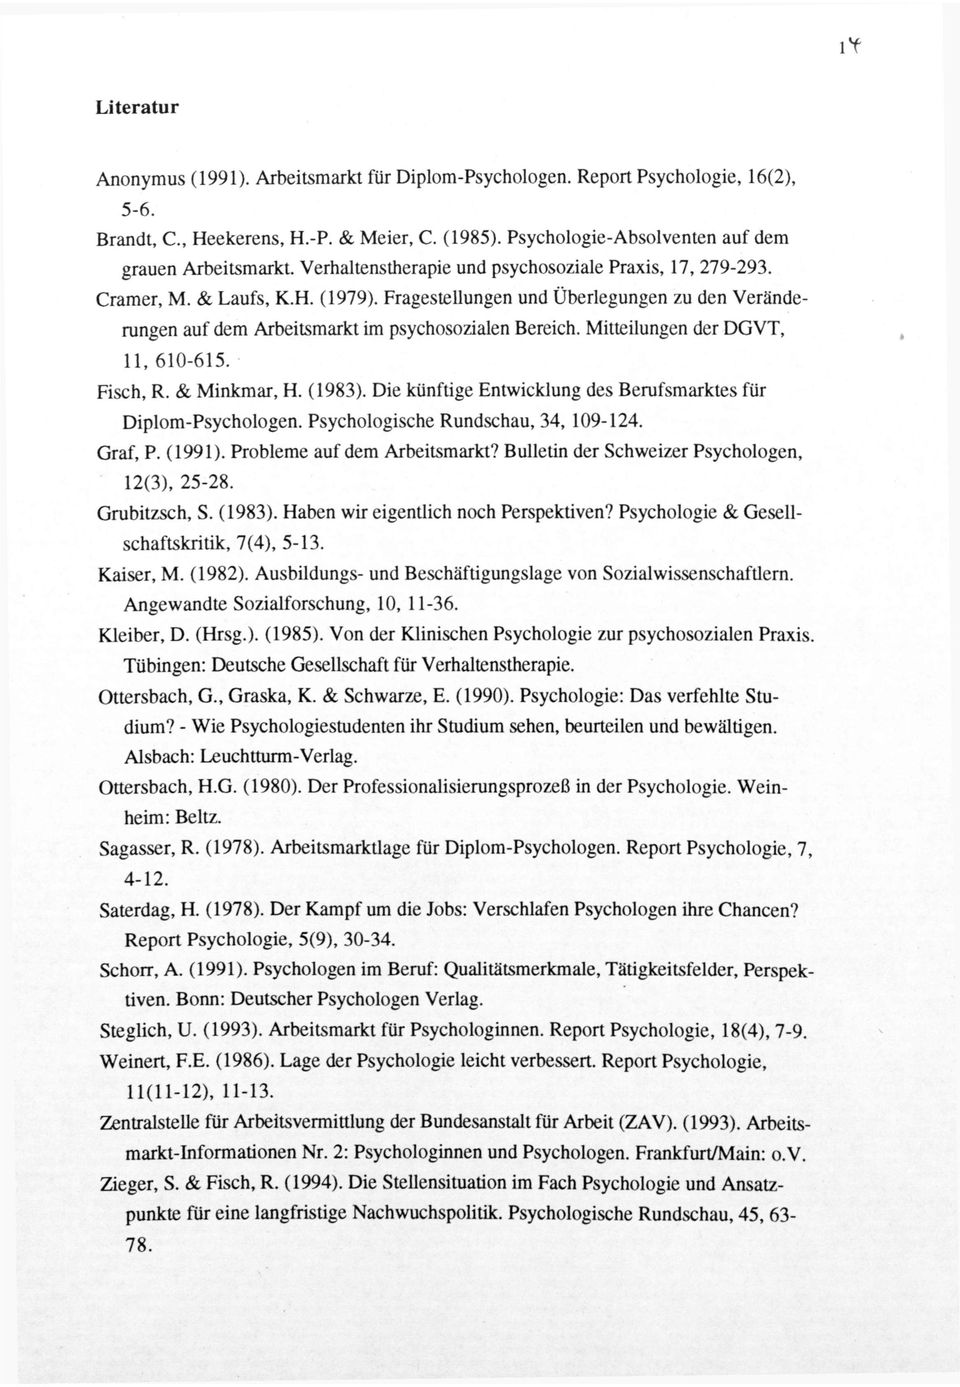 Mitteilungen der DGVT, 11, 610-615. Fisch, R. & Minkmar, H. (1983). Die künftige Entwicklung des Berufsmarktes für Diplom-Psychologen. Psychologische Rundschau, 34, 109-124. Graf, P. (1991).